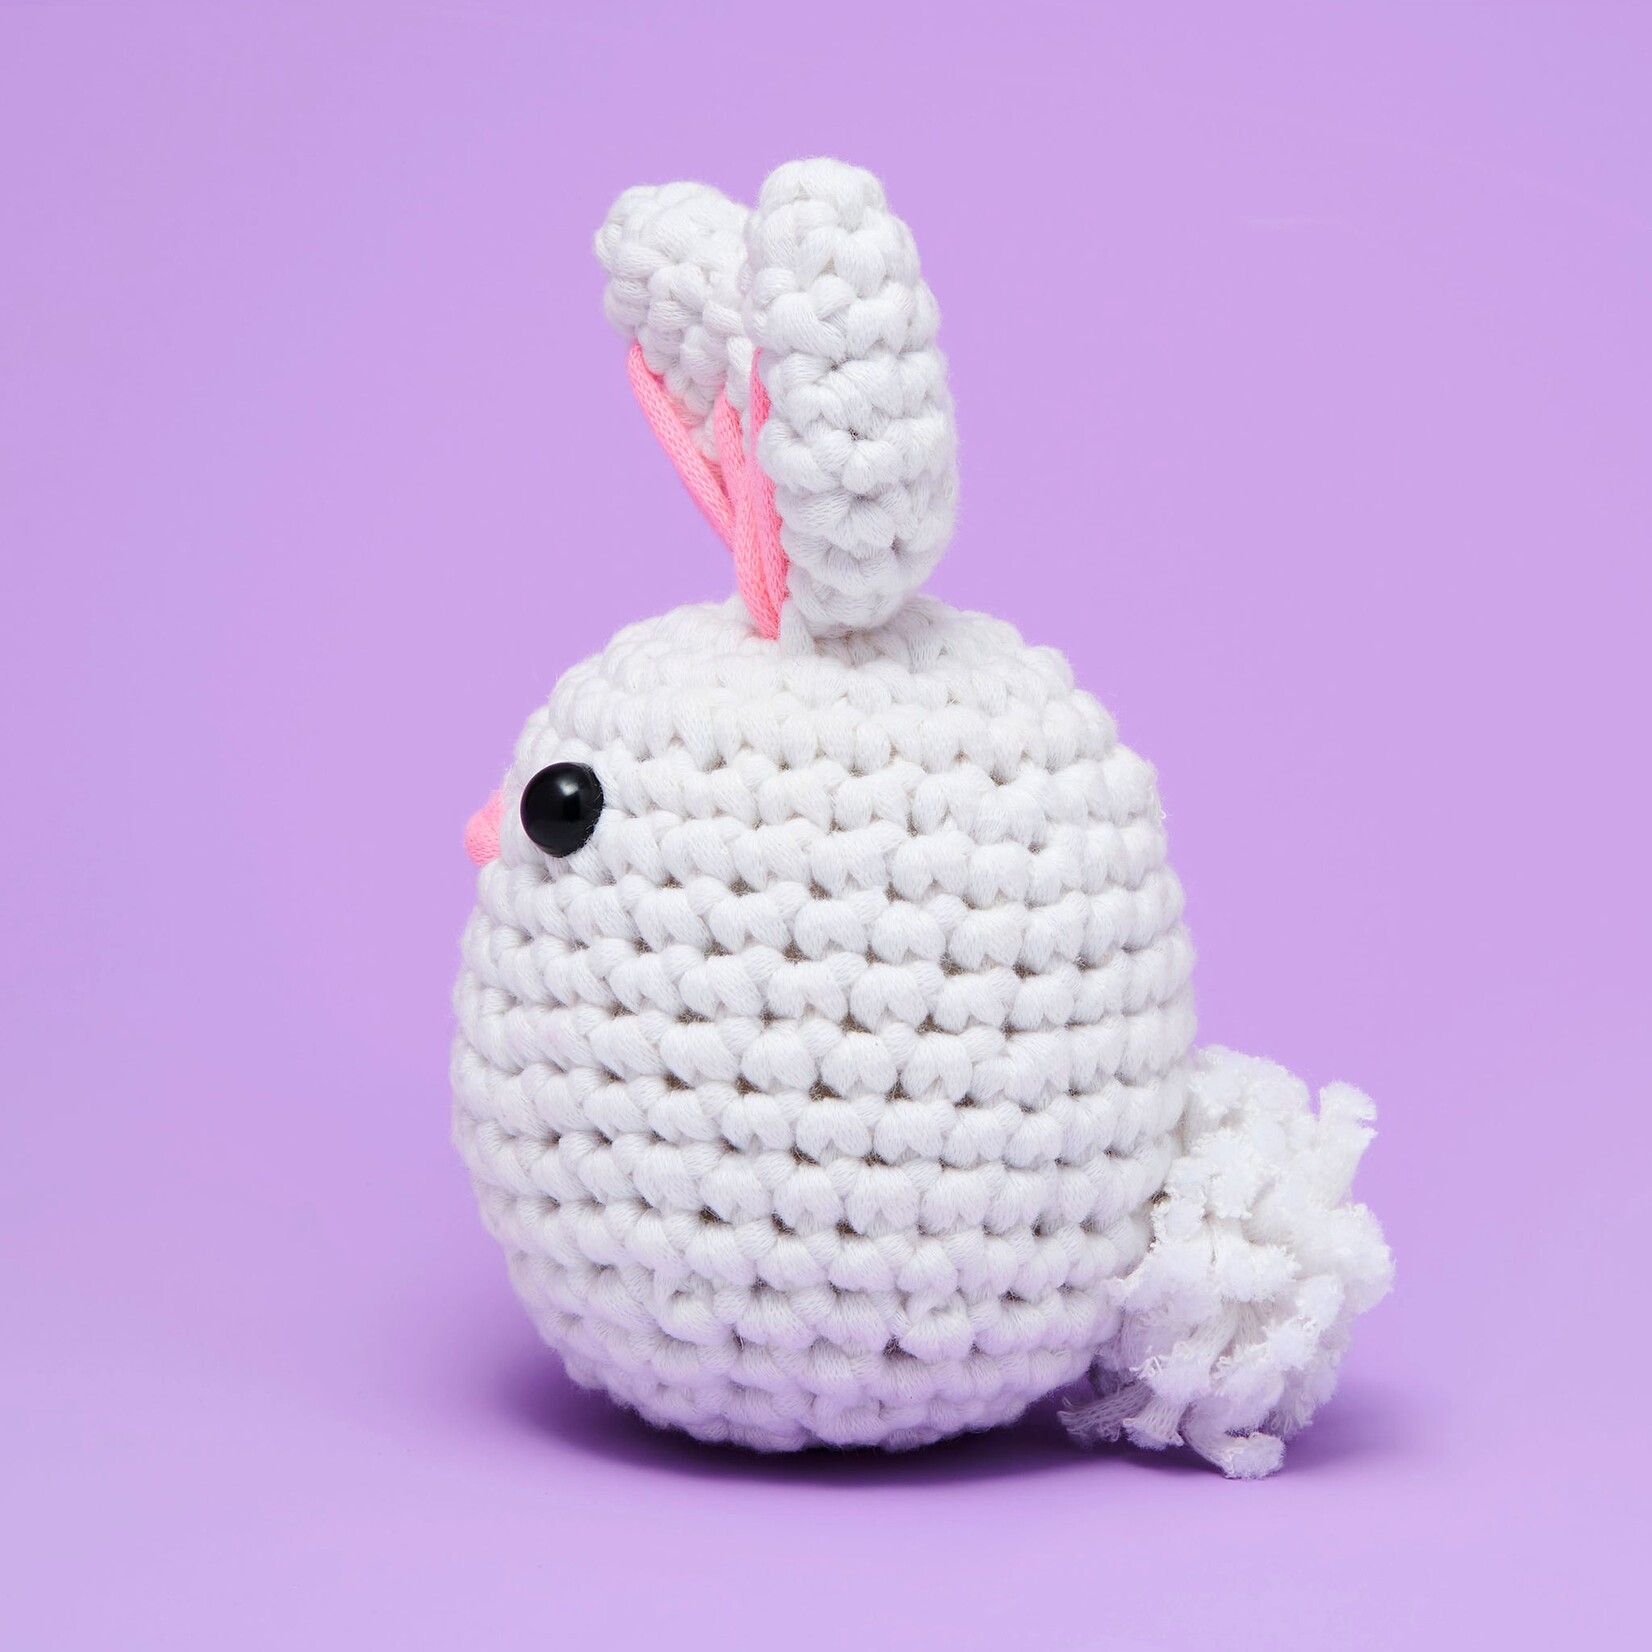 Beginner Crochet Kit - Jojo The Bunny